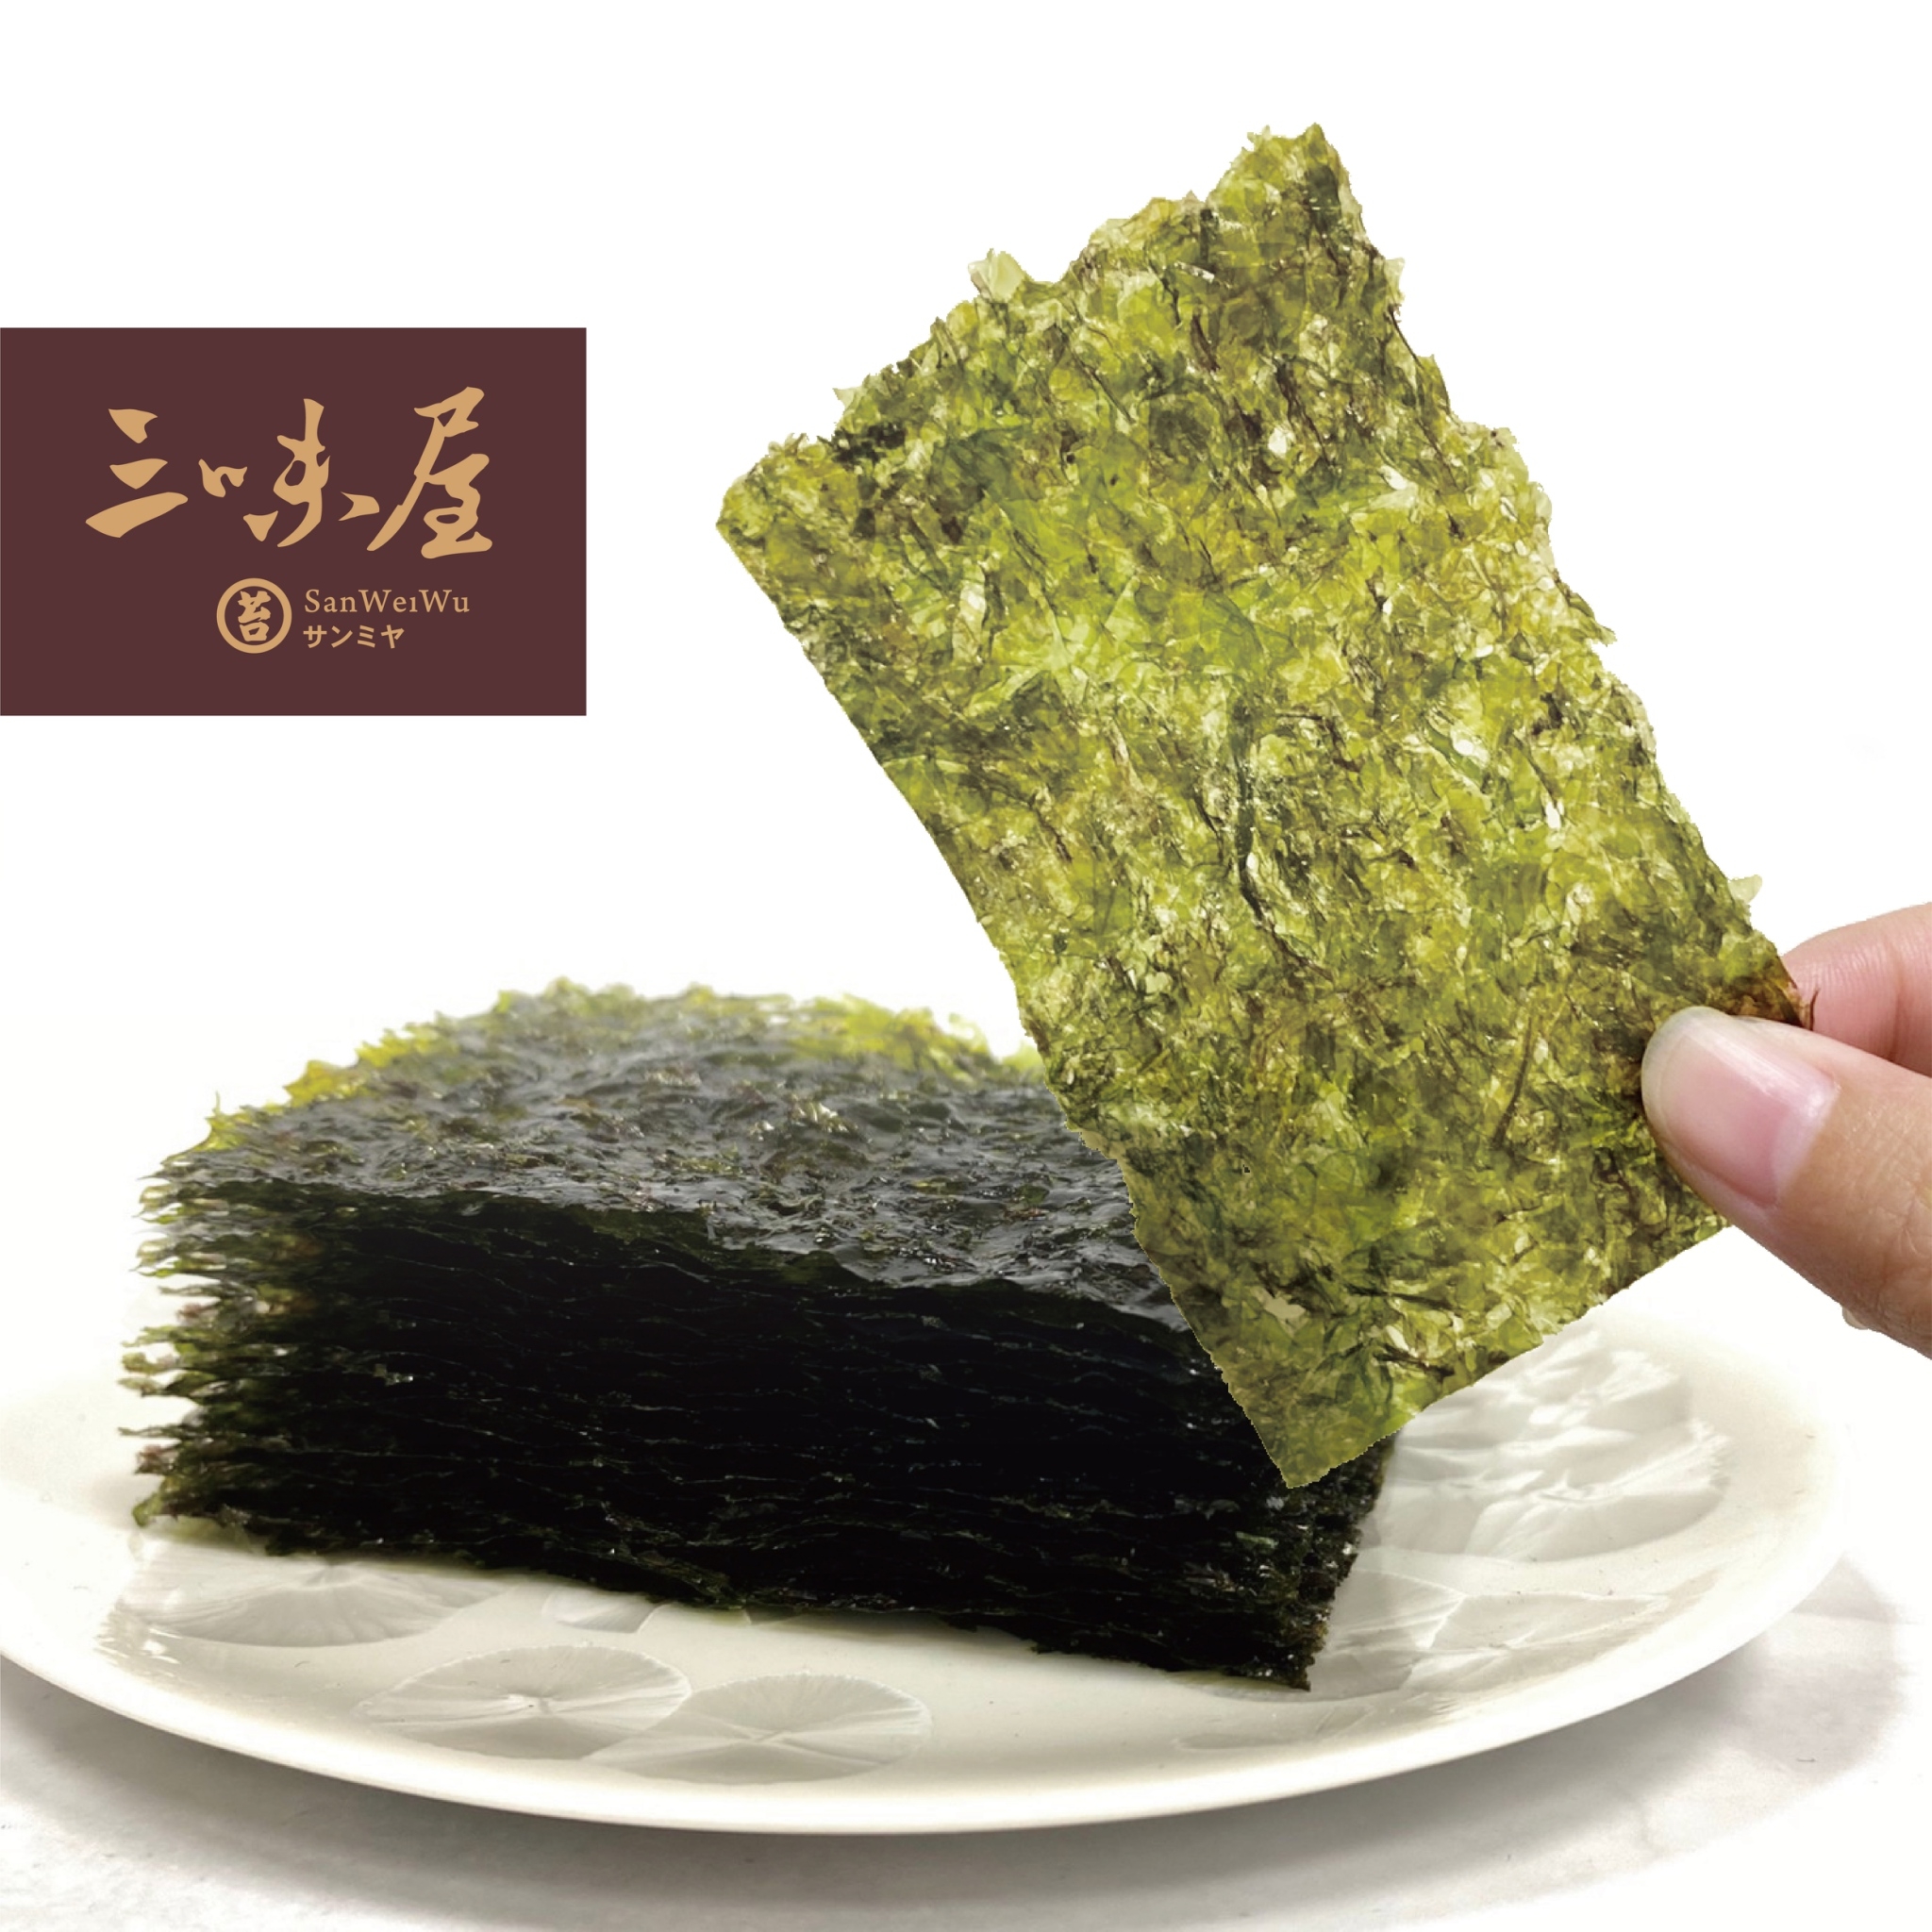 【三味屋】100%純橄欖油海苔 韓式海苔(15g克x12入/箱)/海苔酥50g